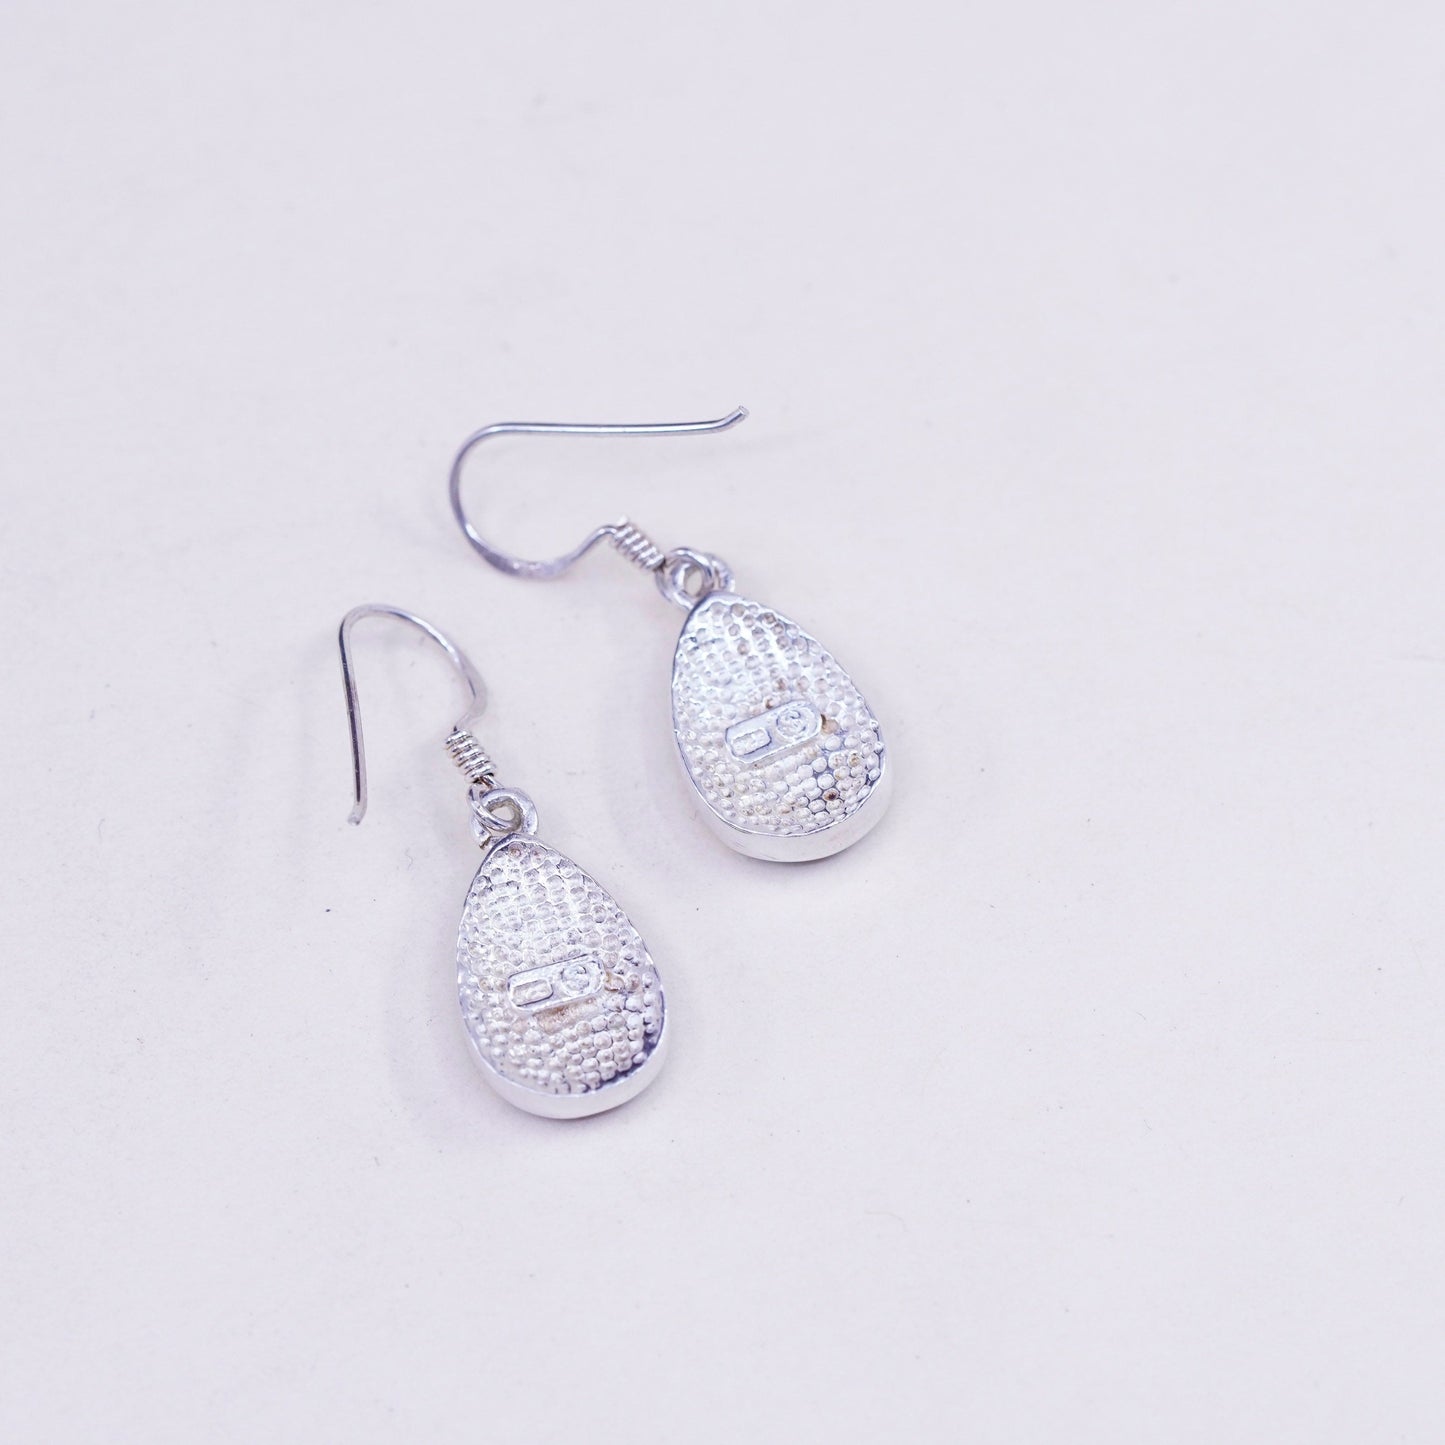 Vintage southwestern sterling 925 silver handmade teardrop earrings with opal